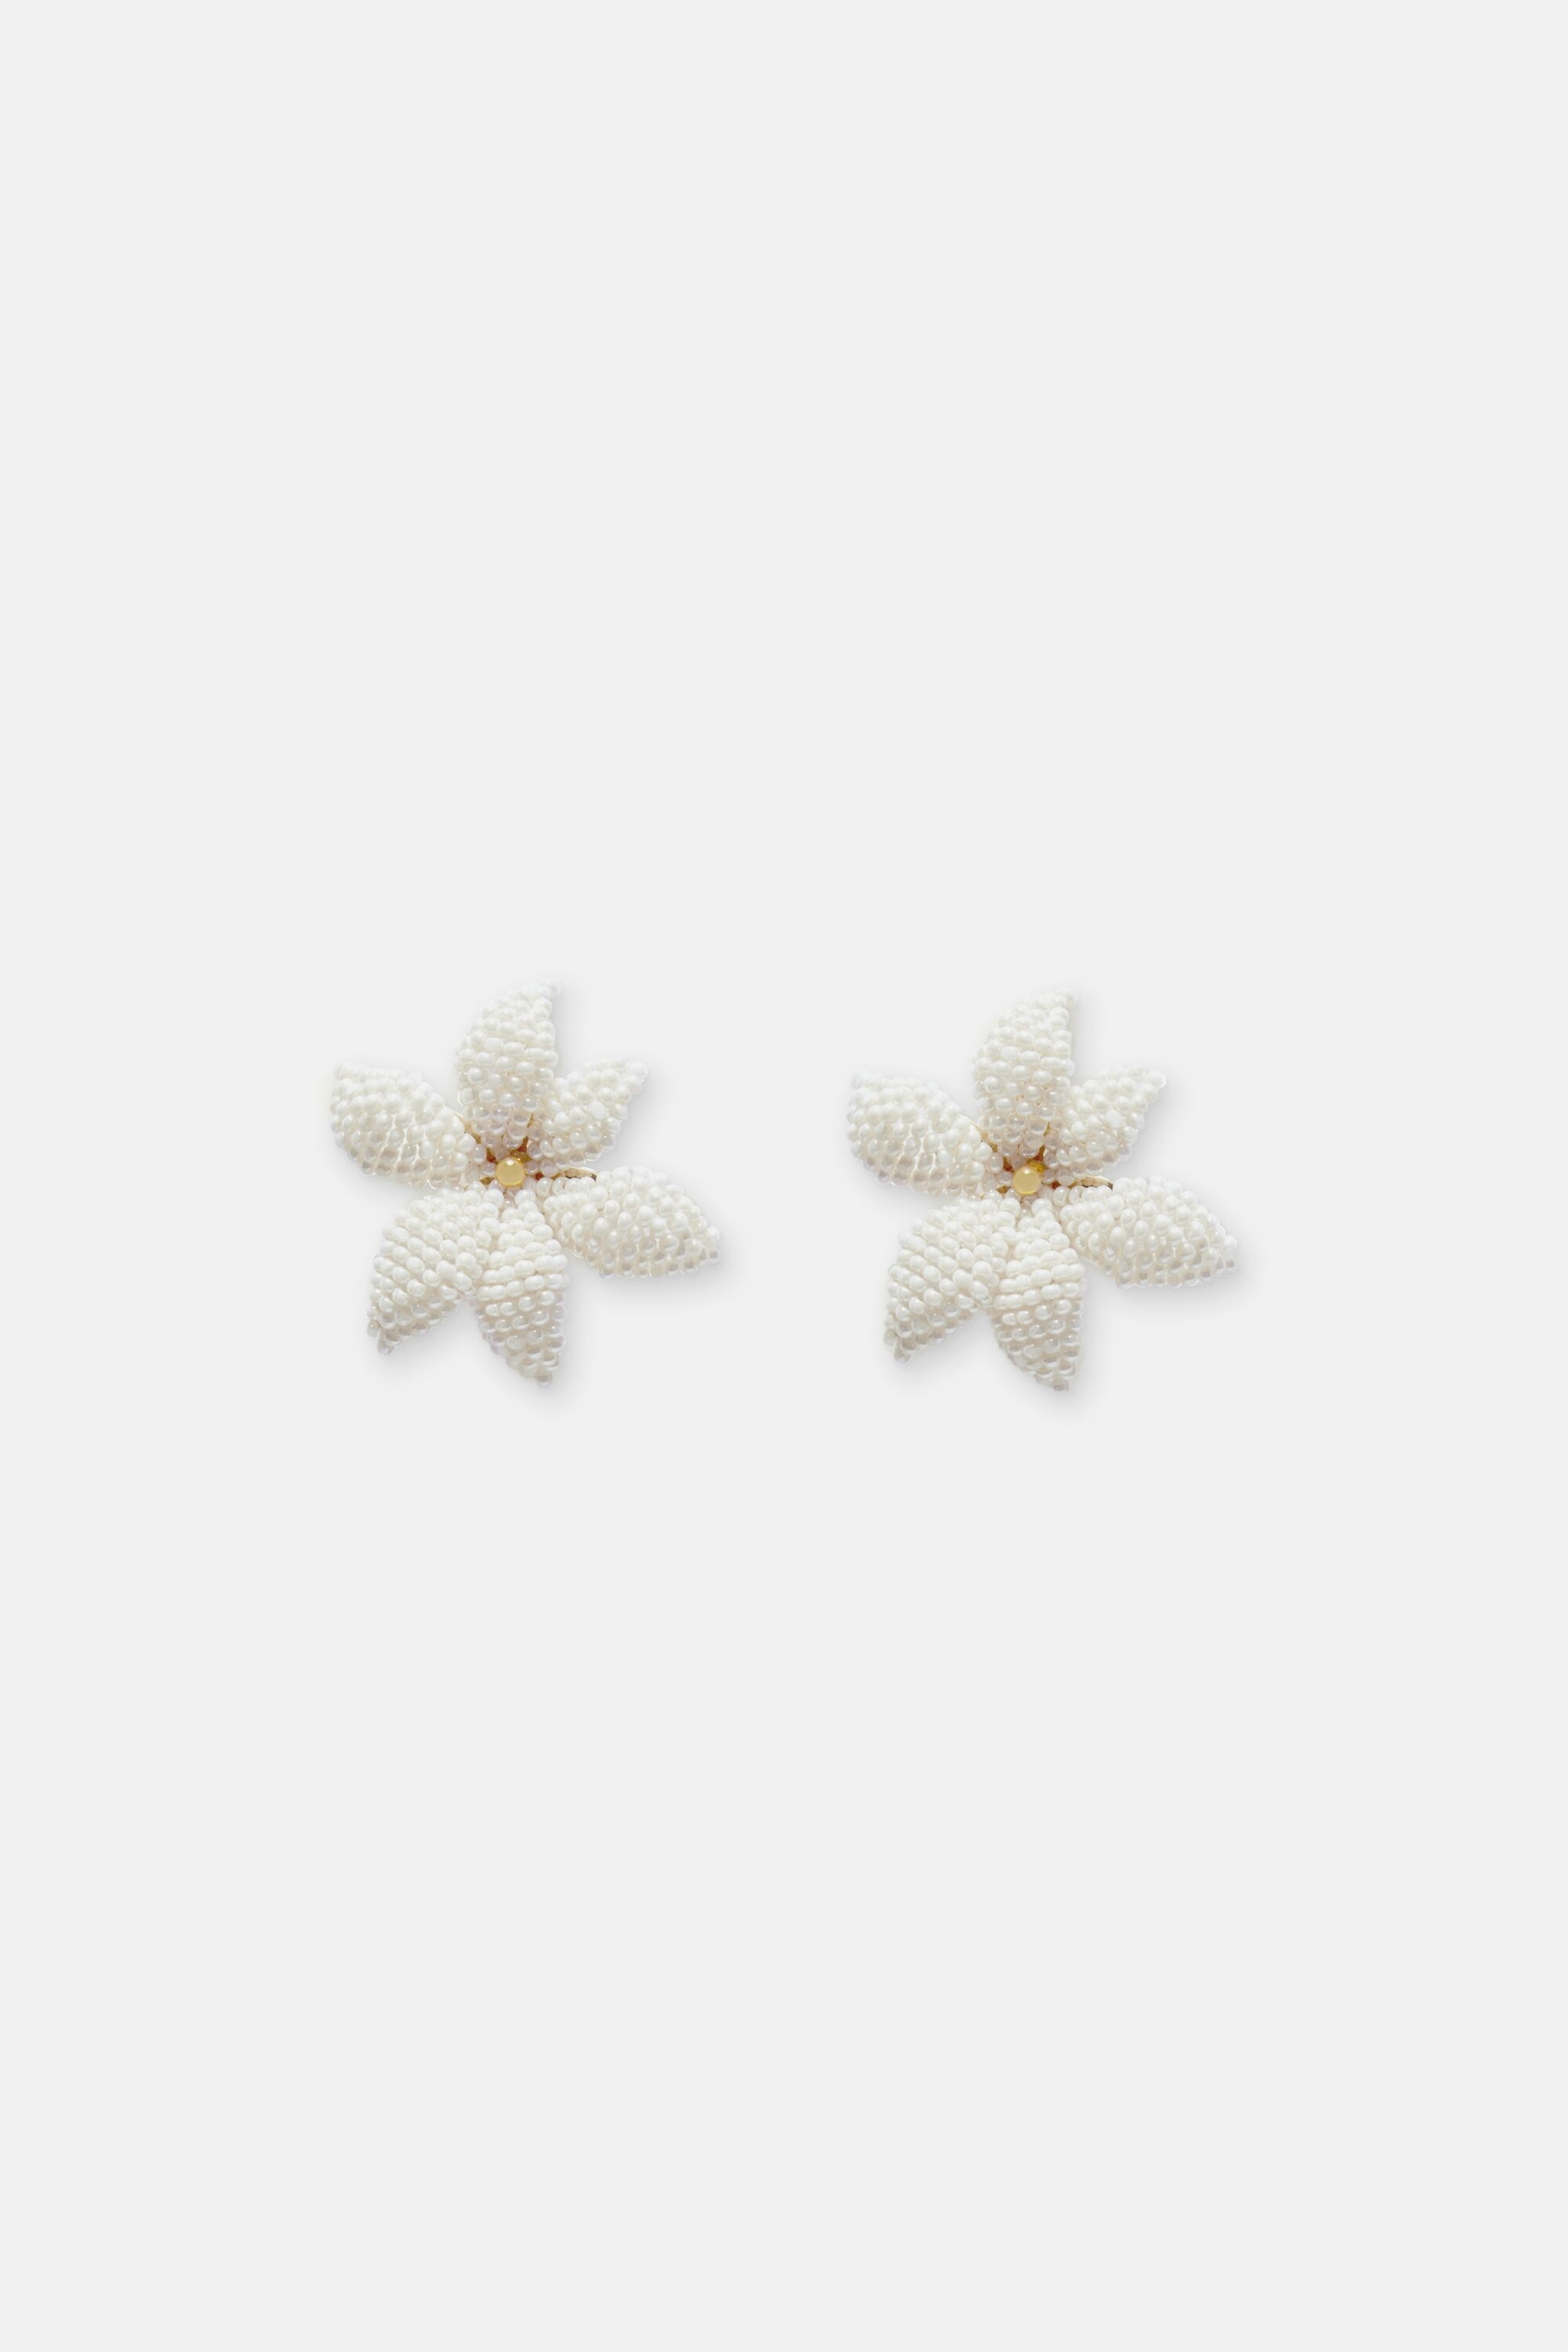 Jasmine Beads medium earrings